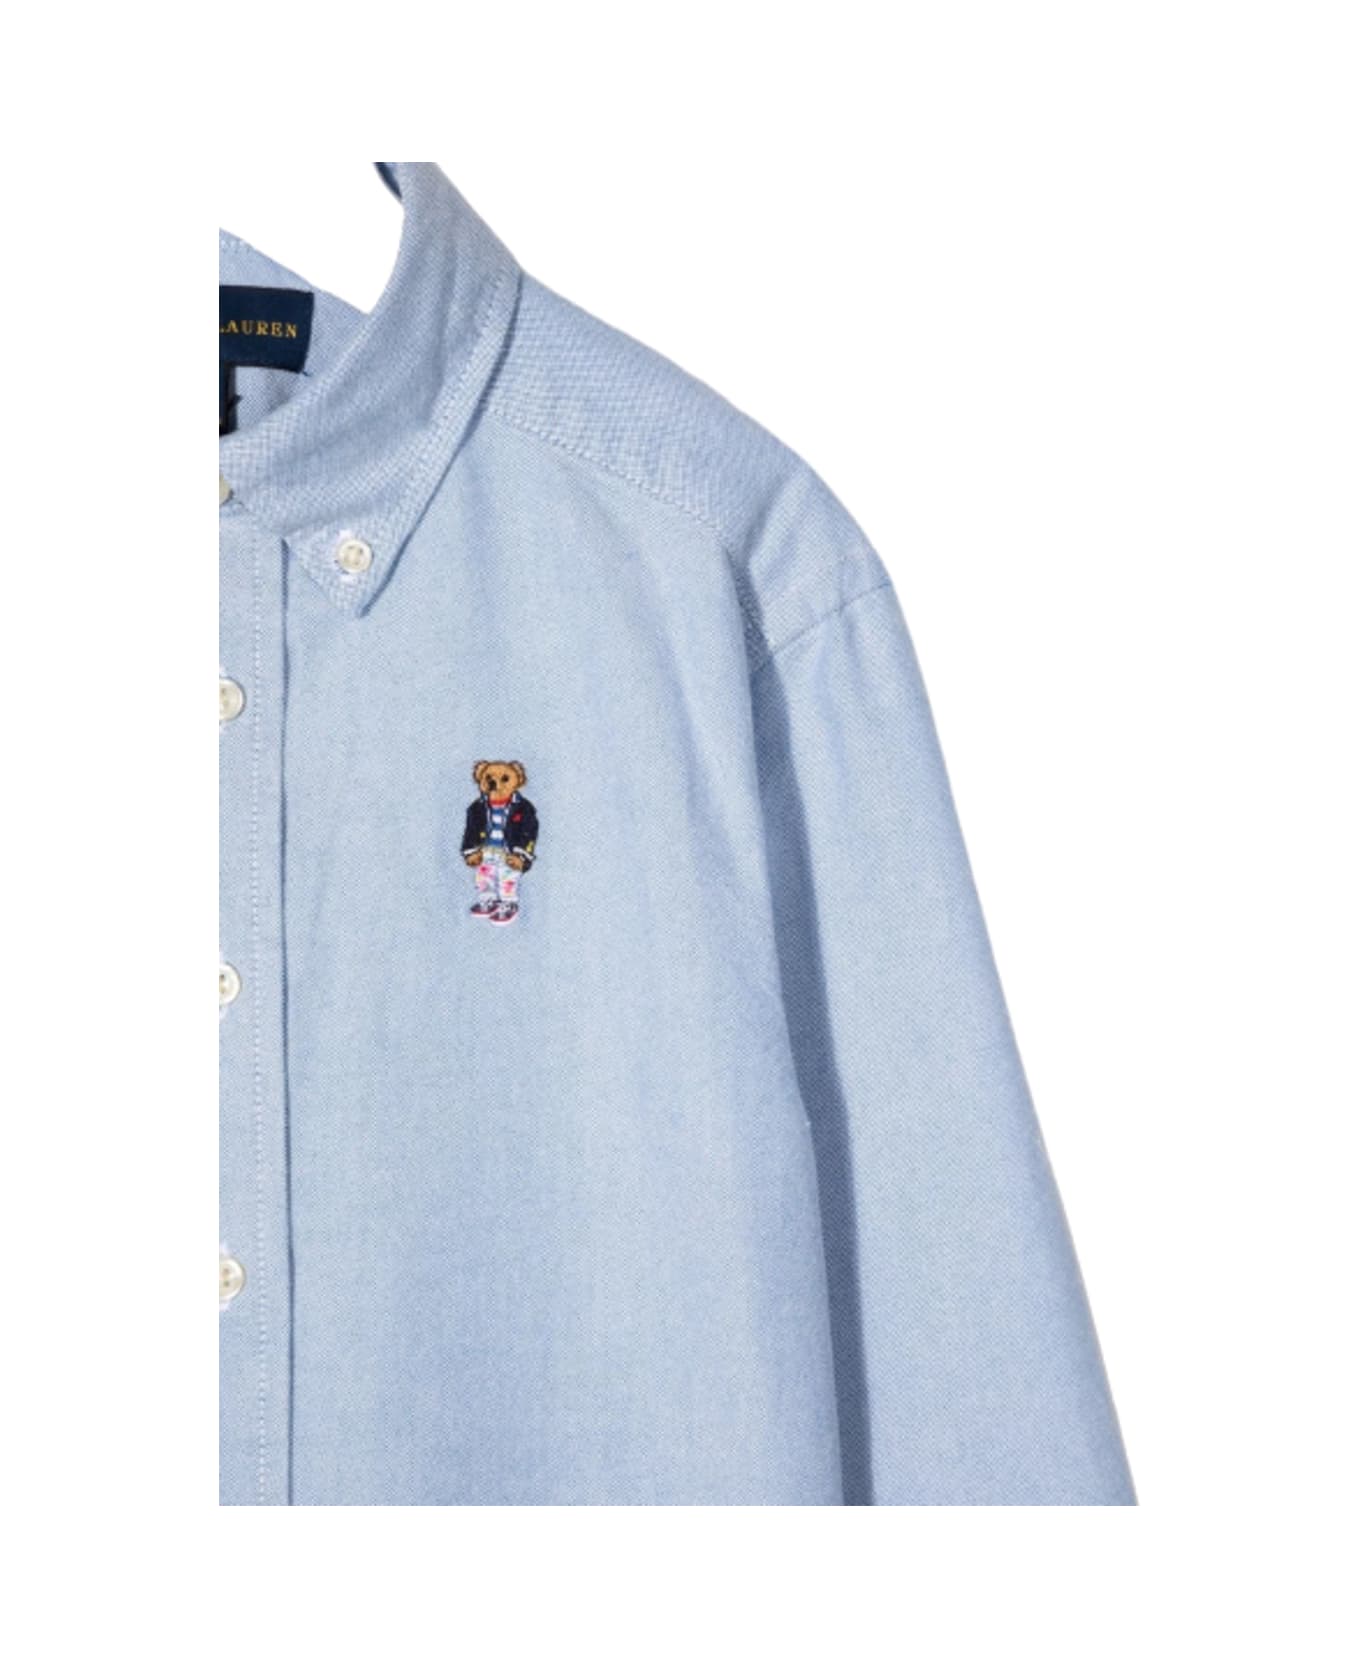 Polo Ralph Lauren Kids Boy's Light Blue Cotton Shirt With Logo Embroidery - Blu